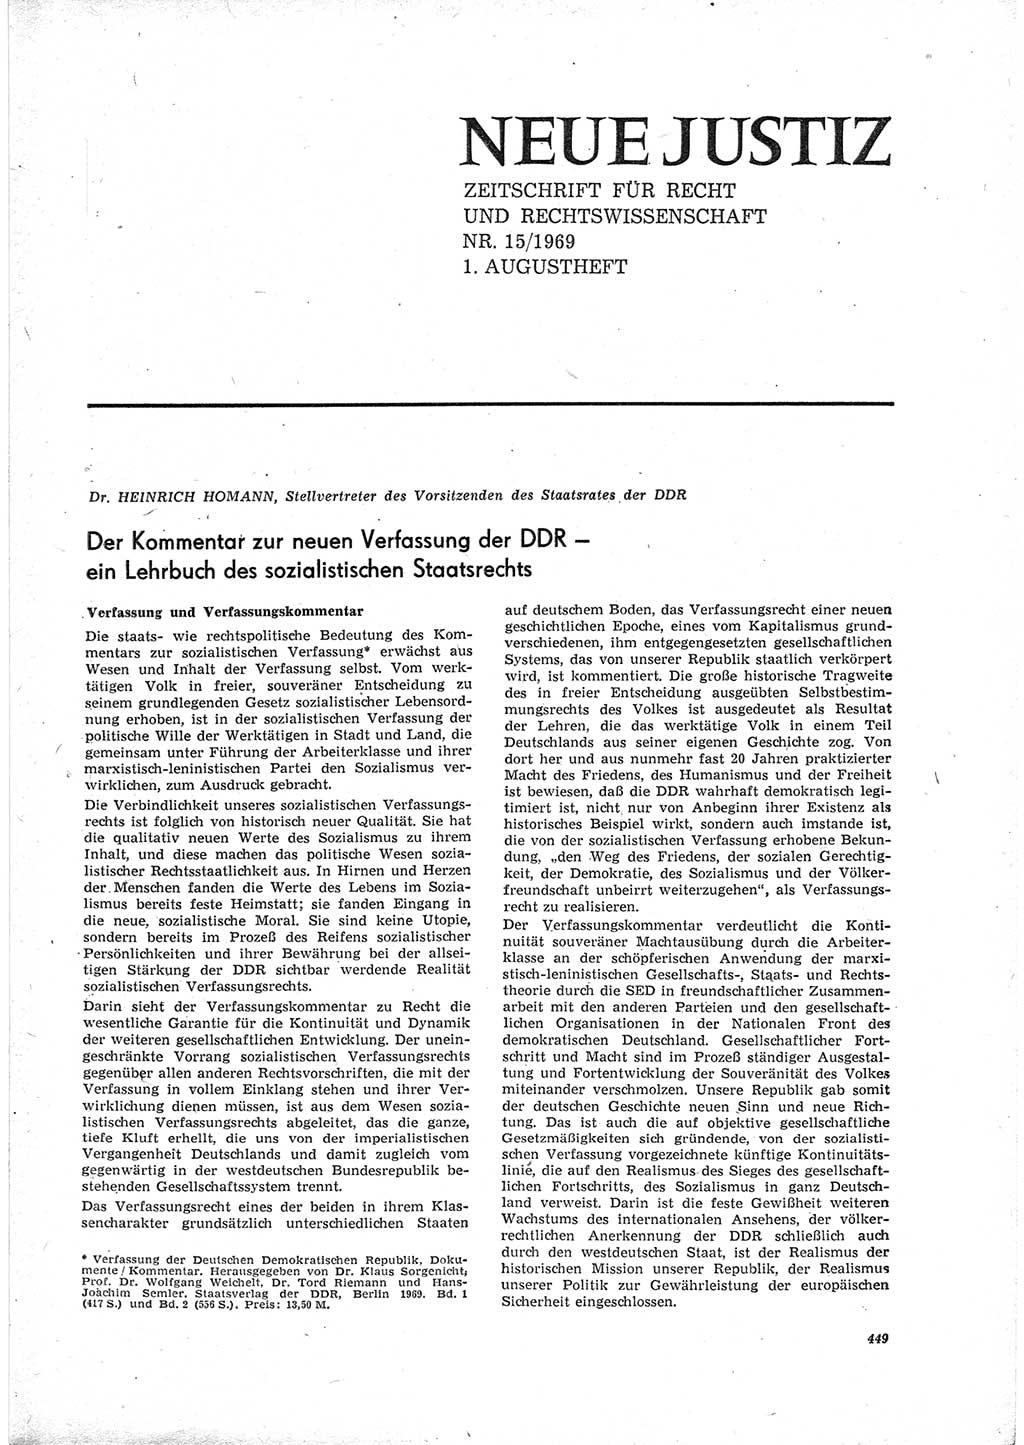 Neue Justiz (NJ), Zeitschrift für Recht und Rechtswissenschaft [Deutsche Demokratische Republik (DDR)], 23. Jahrgang 1969, Seite 449 (NJ DDR 1969, S. 449)